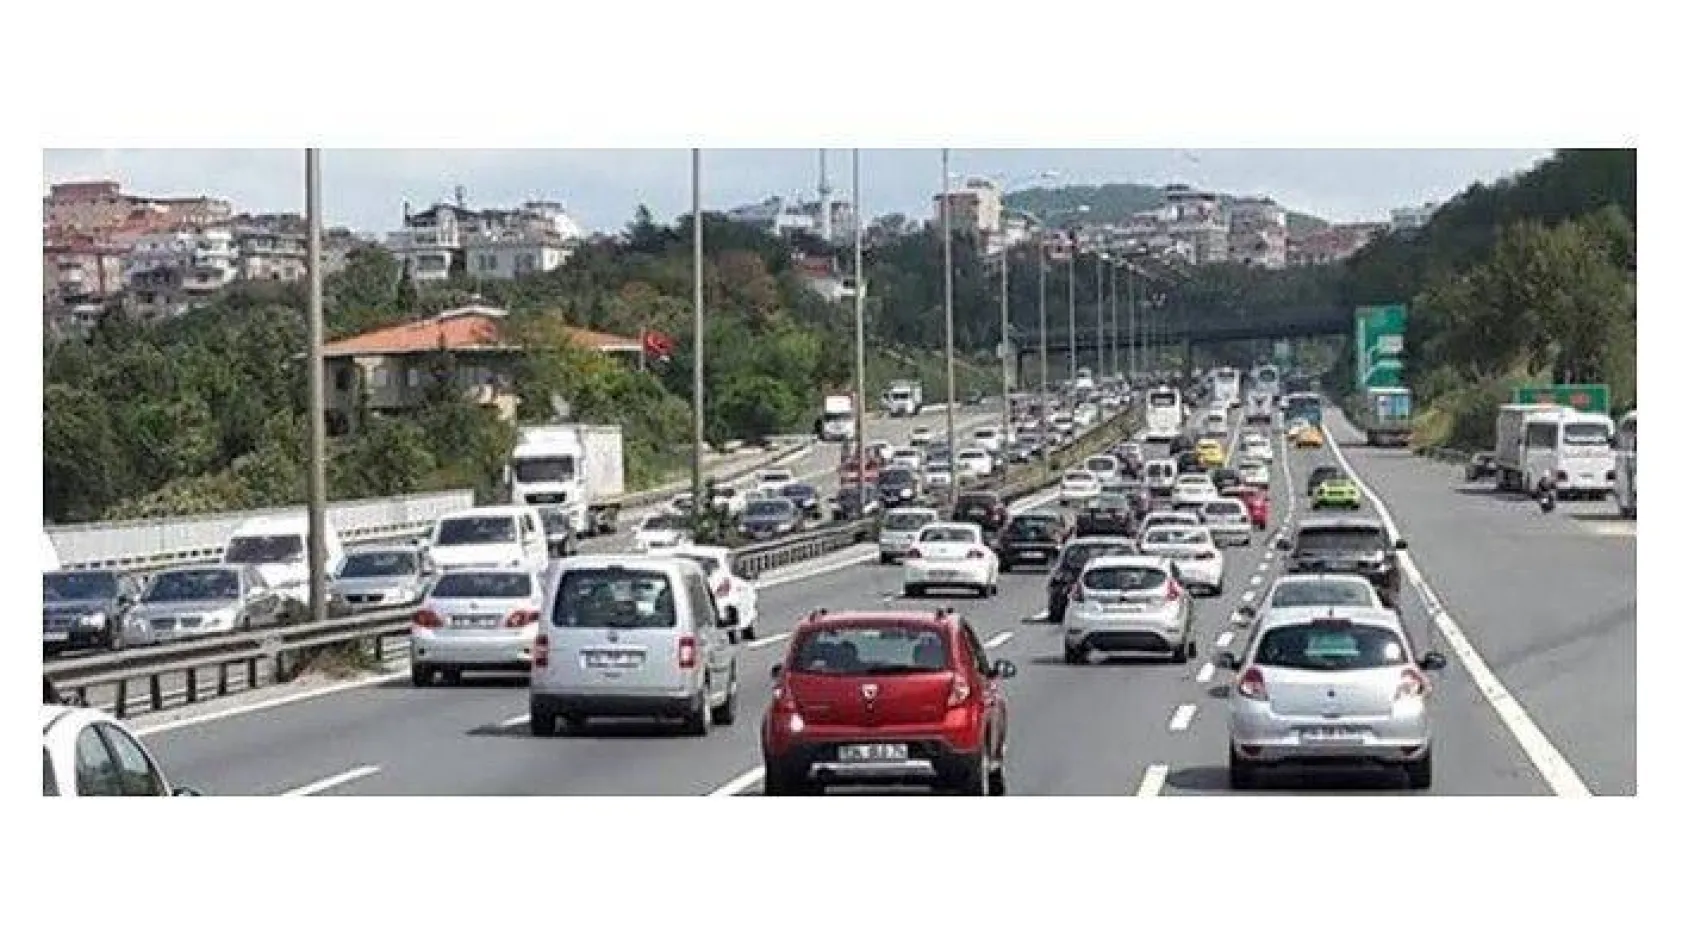 İstanbul'da kısıtlamanın sona ermesinin ardından Altuniza'de de trafik kilitlendi